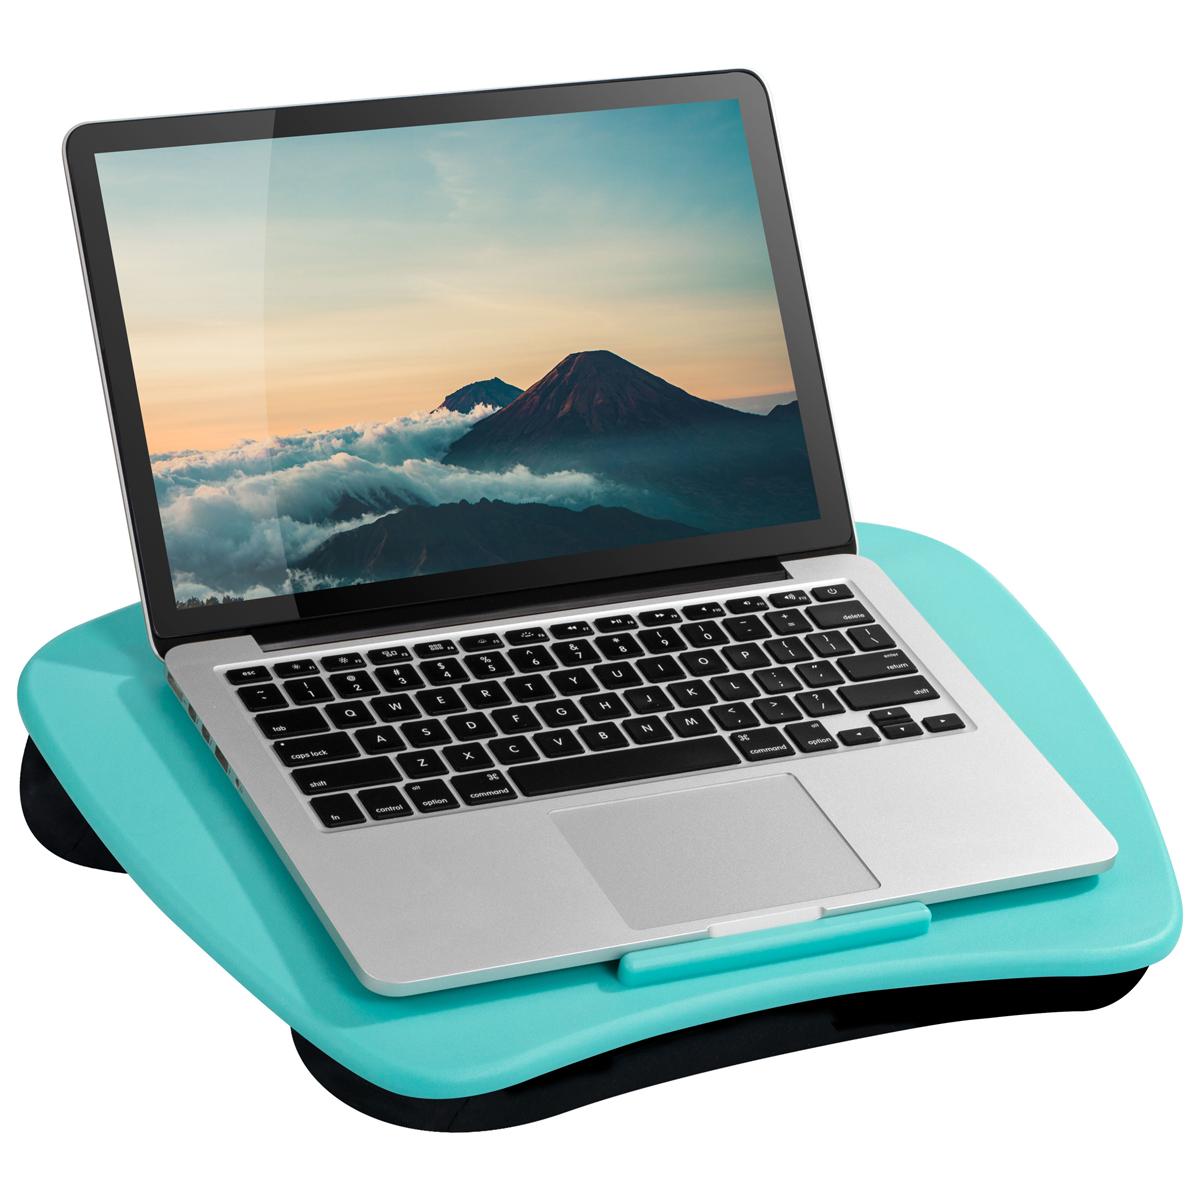 LapGear Laptop Lap Desks for $7.38